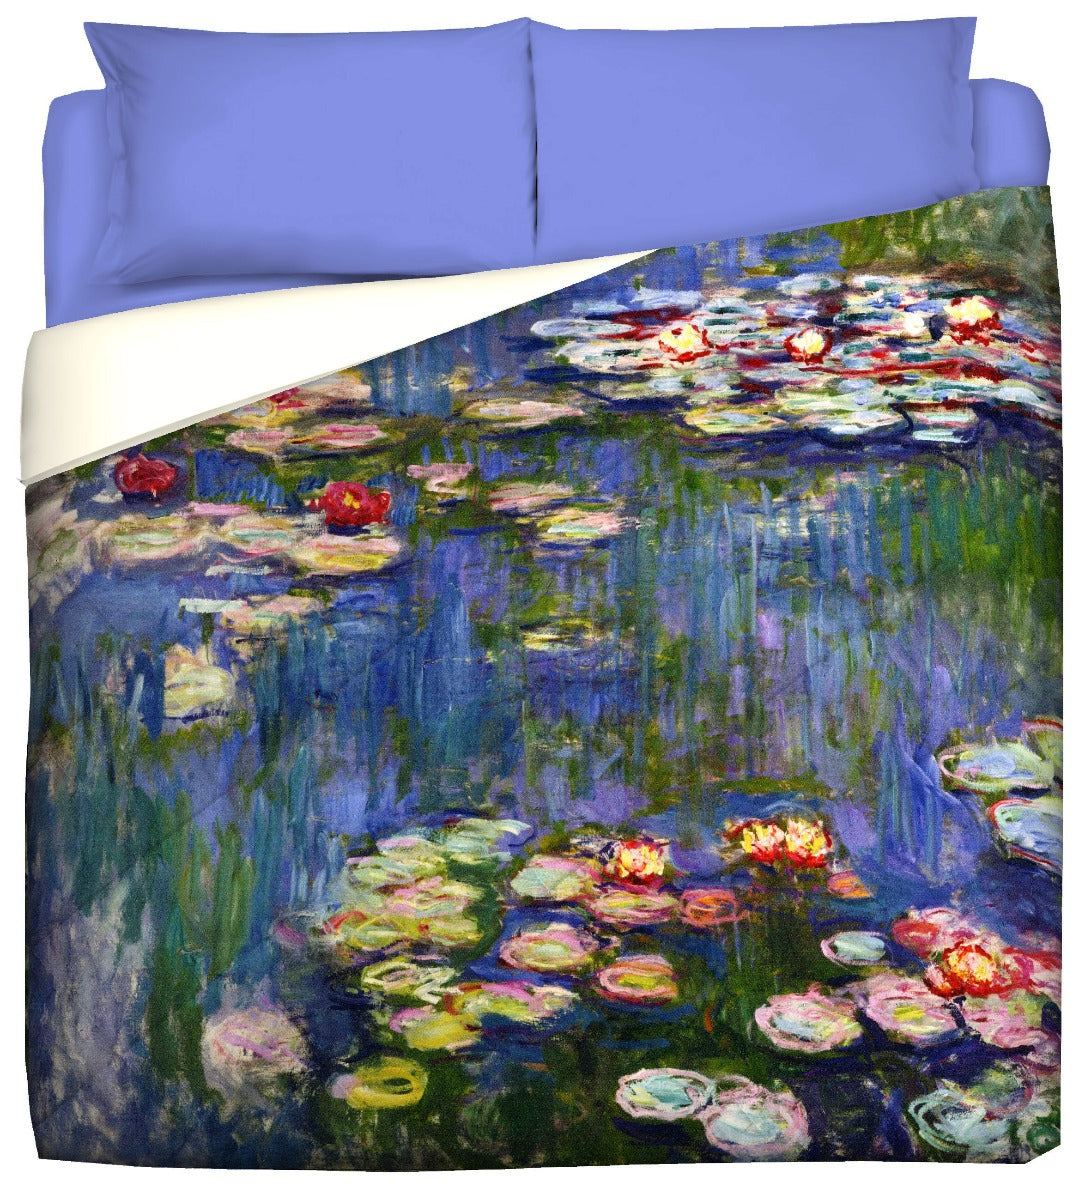 Winter Quilt - Water Lilies - Monet